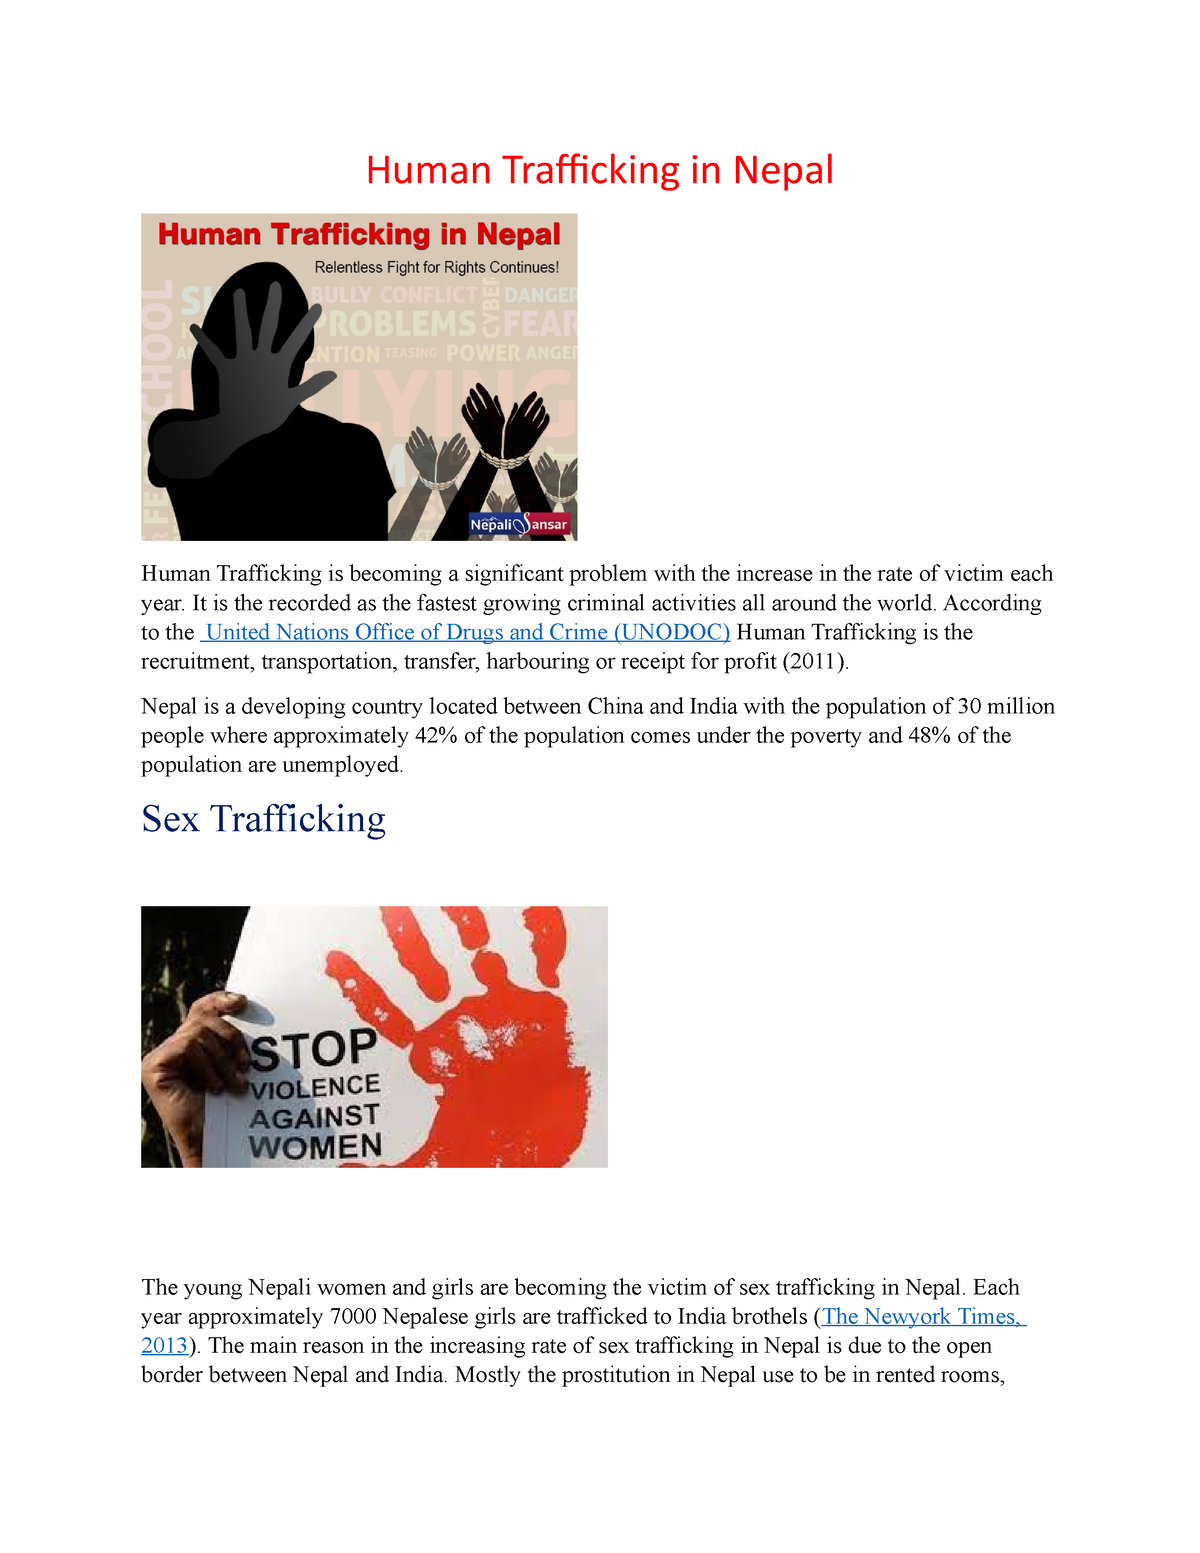 Sex Trafficking In Nepal Human Trafficking In Nepal Human Trafficking